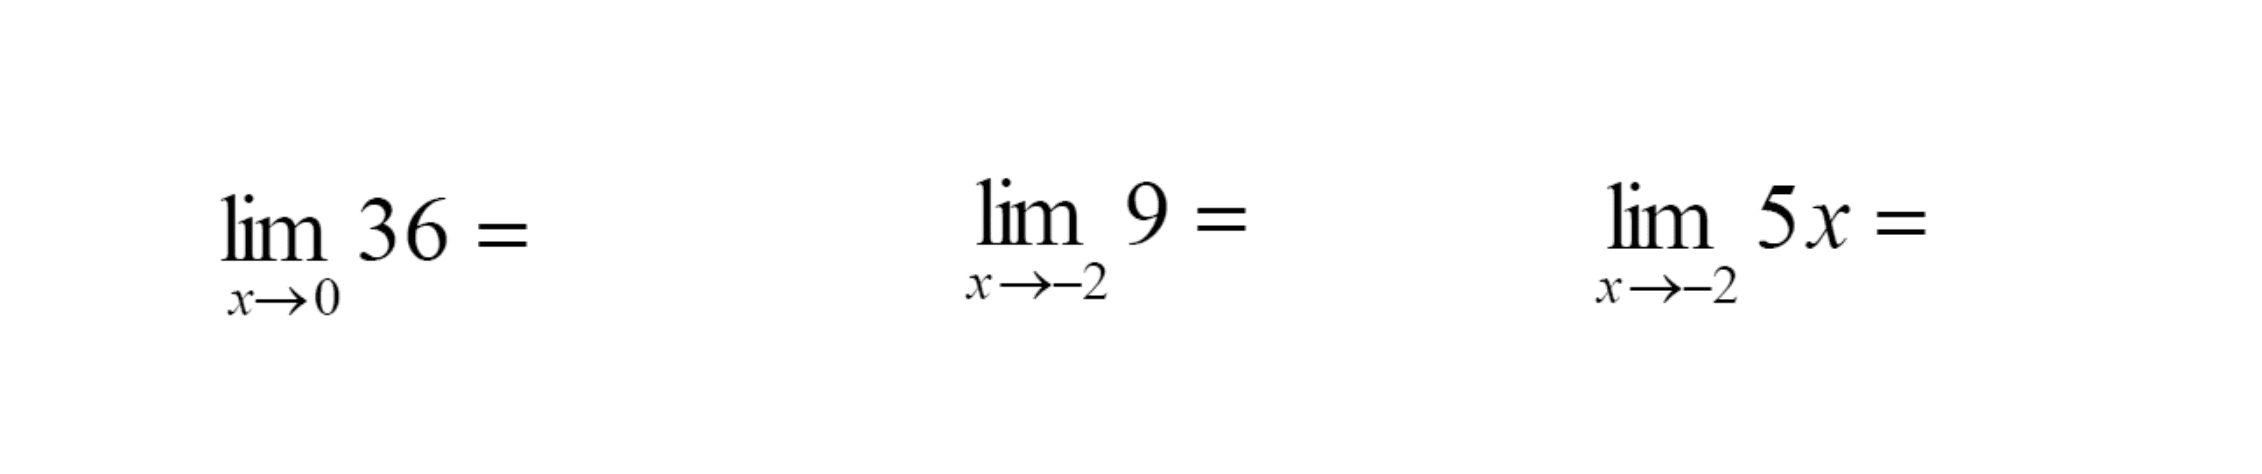  lim x->0 36=  lim x->-2 9=  lim x->-2 5x= 